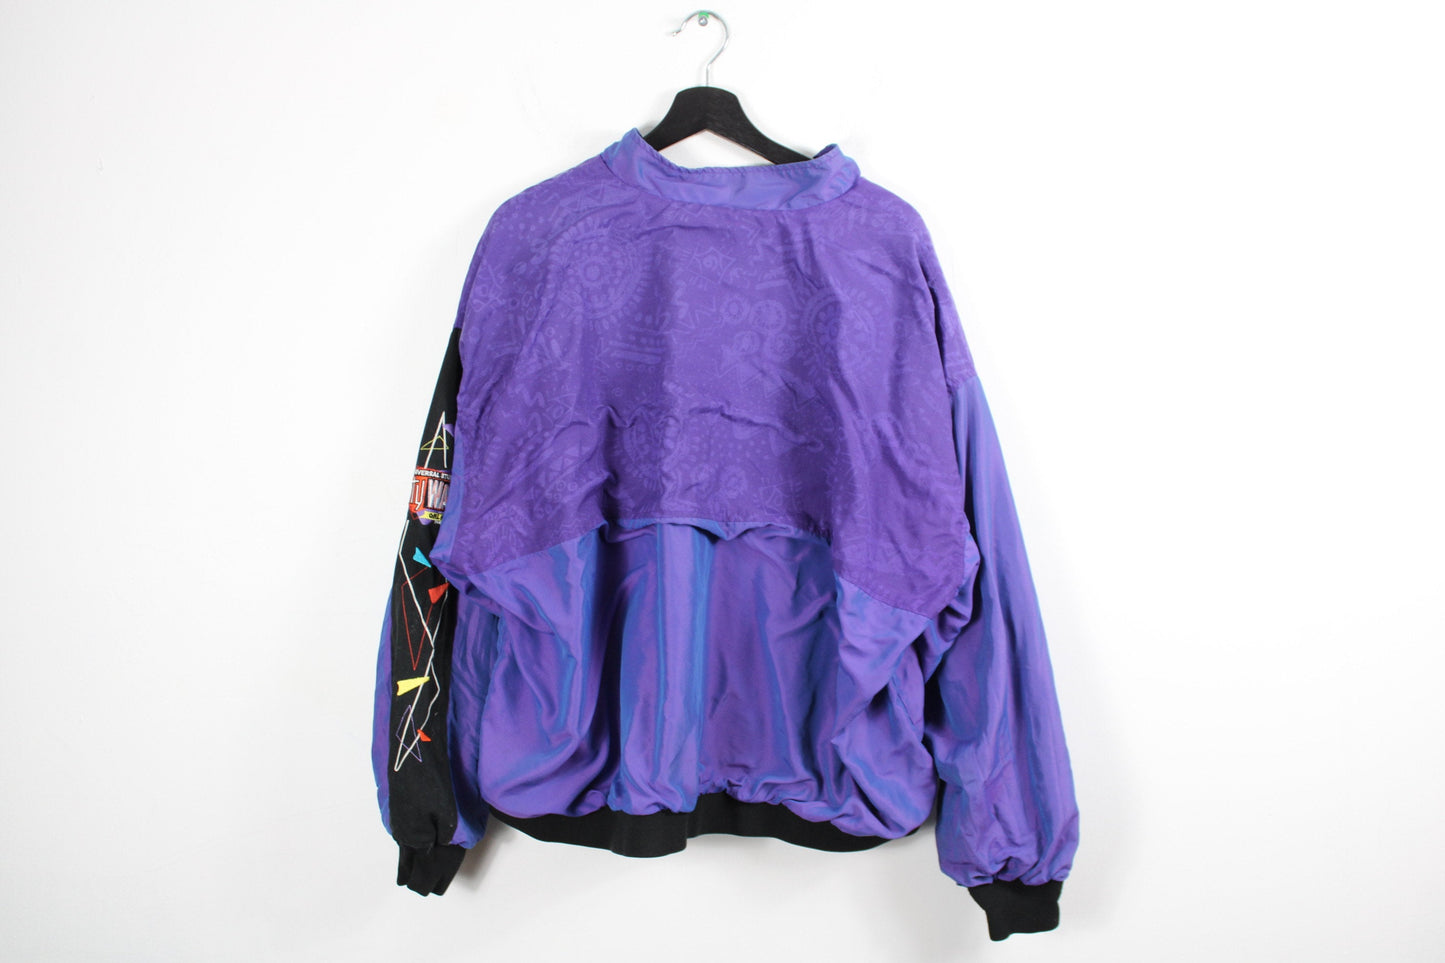 Universal-Studios Jacket / Vintage Windbreaker Ski Coat / 90s Hip-Hop Clothing / Streetwear